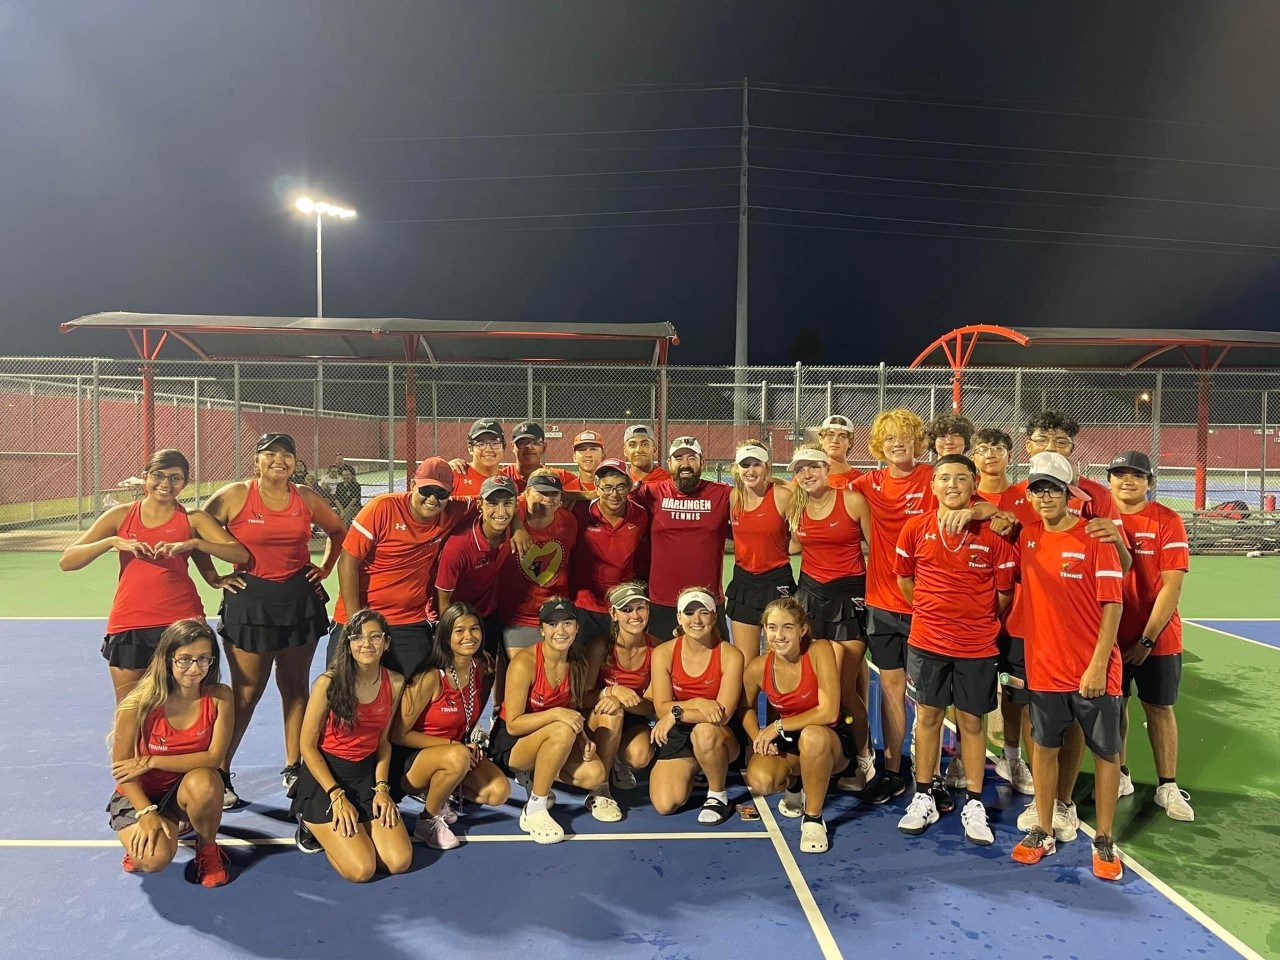 El equipo Cardinal de tenis gana el Campeonato Nivel Distrito 32-6A.